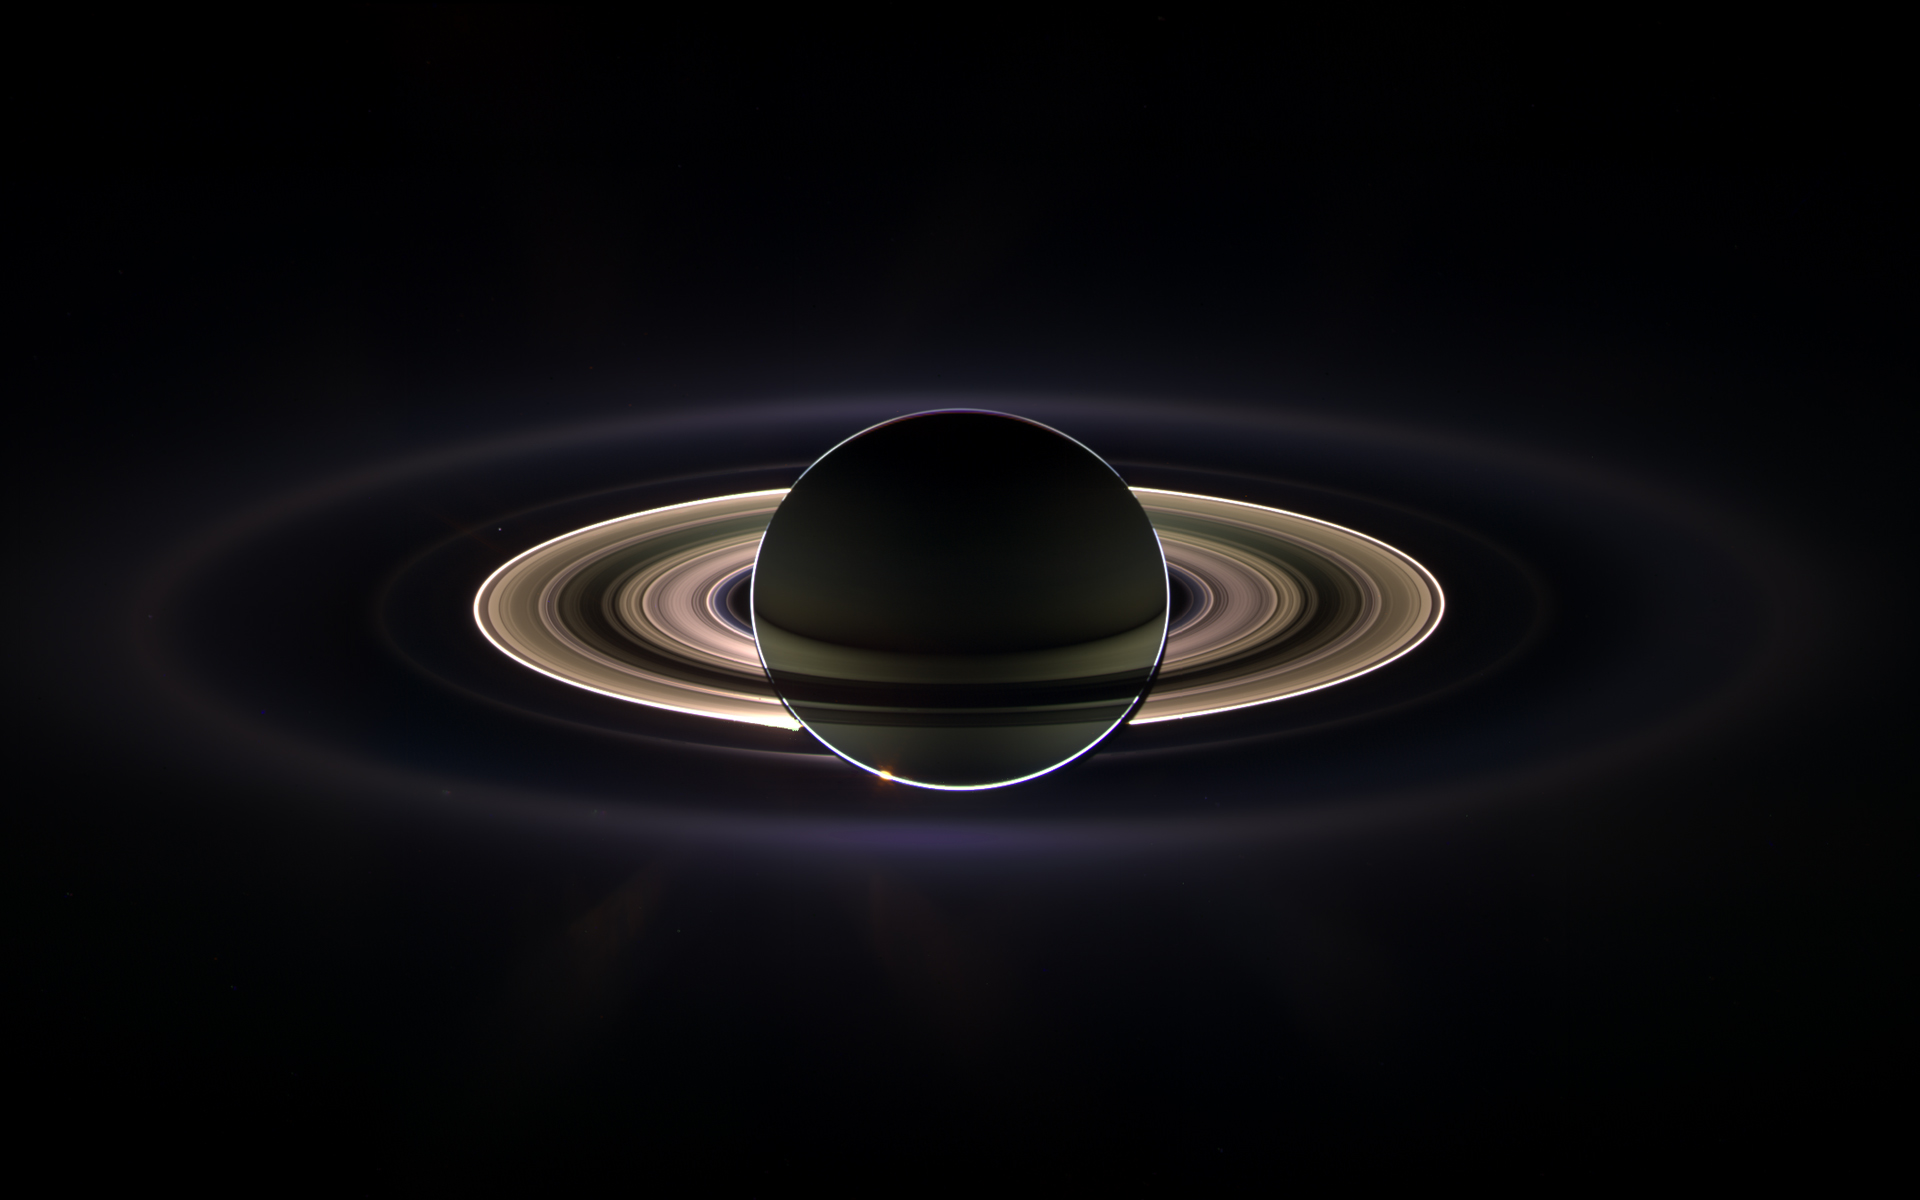 космическое пространство, Сатурн - обои на рабочий стол